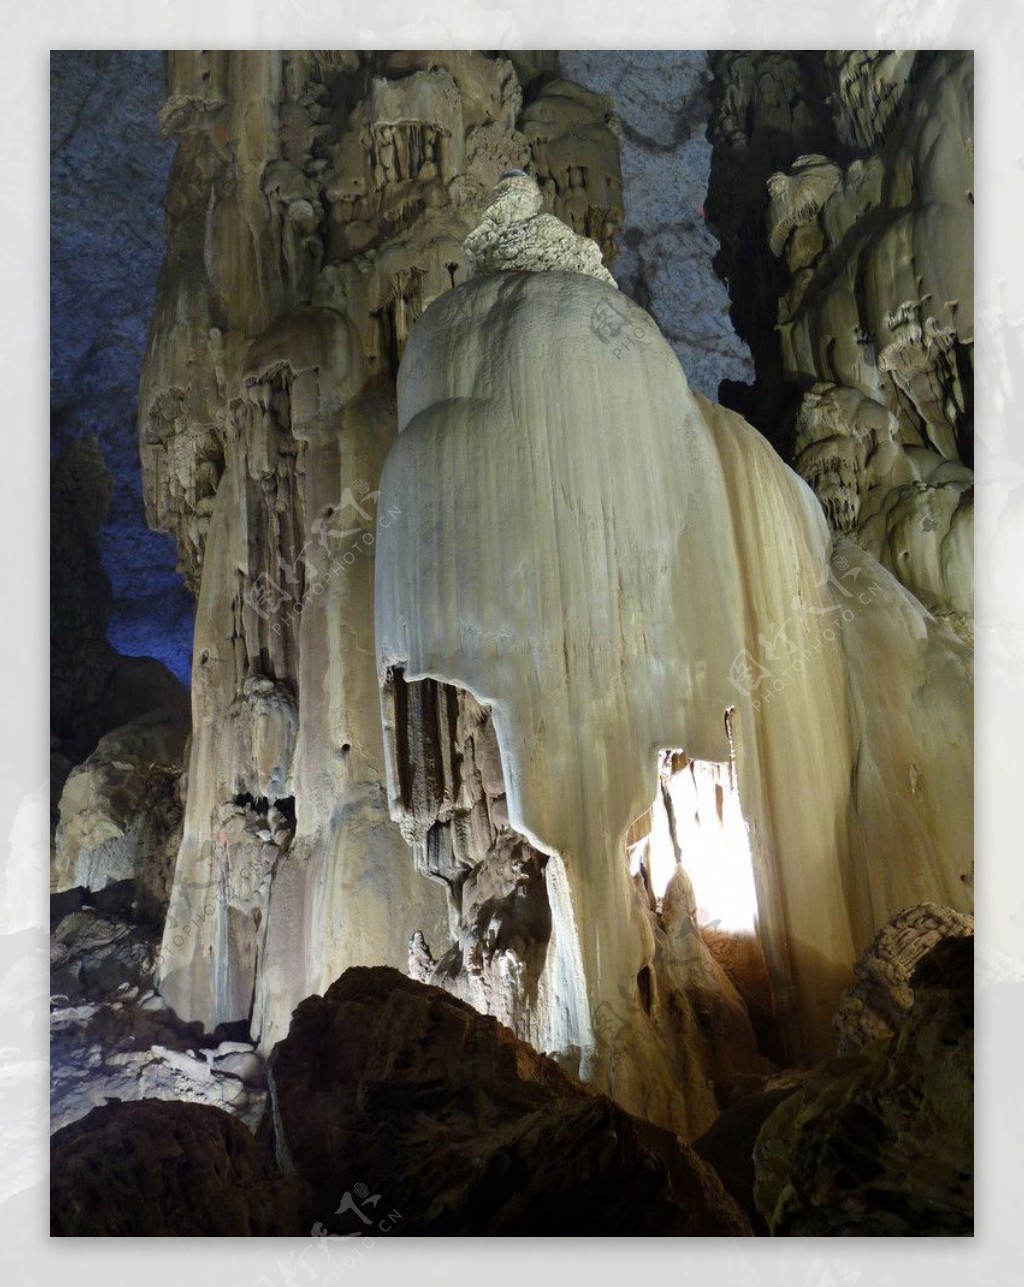 【携程攻略】桂林银子岩景点,银子岩溶洞是典型的喀斯特地貌，贯穿十二座山峰，属层楼式溶洞，洞内…